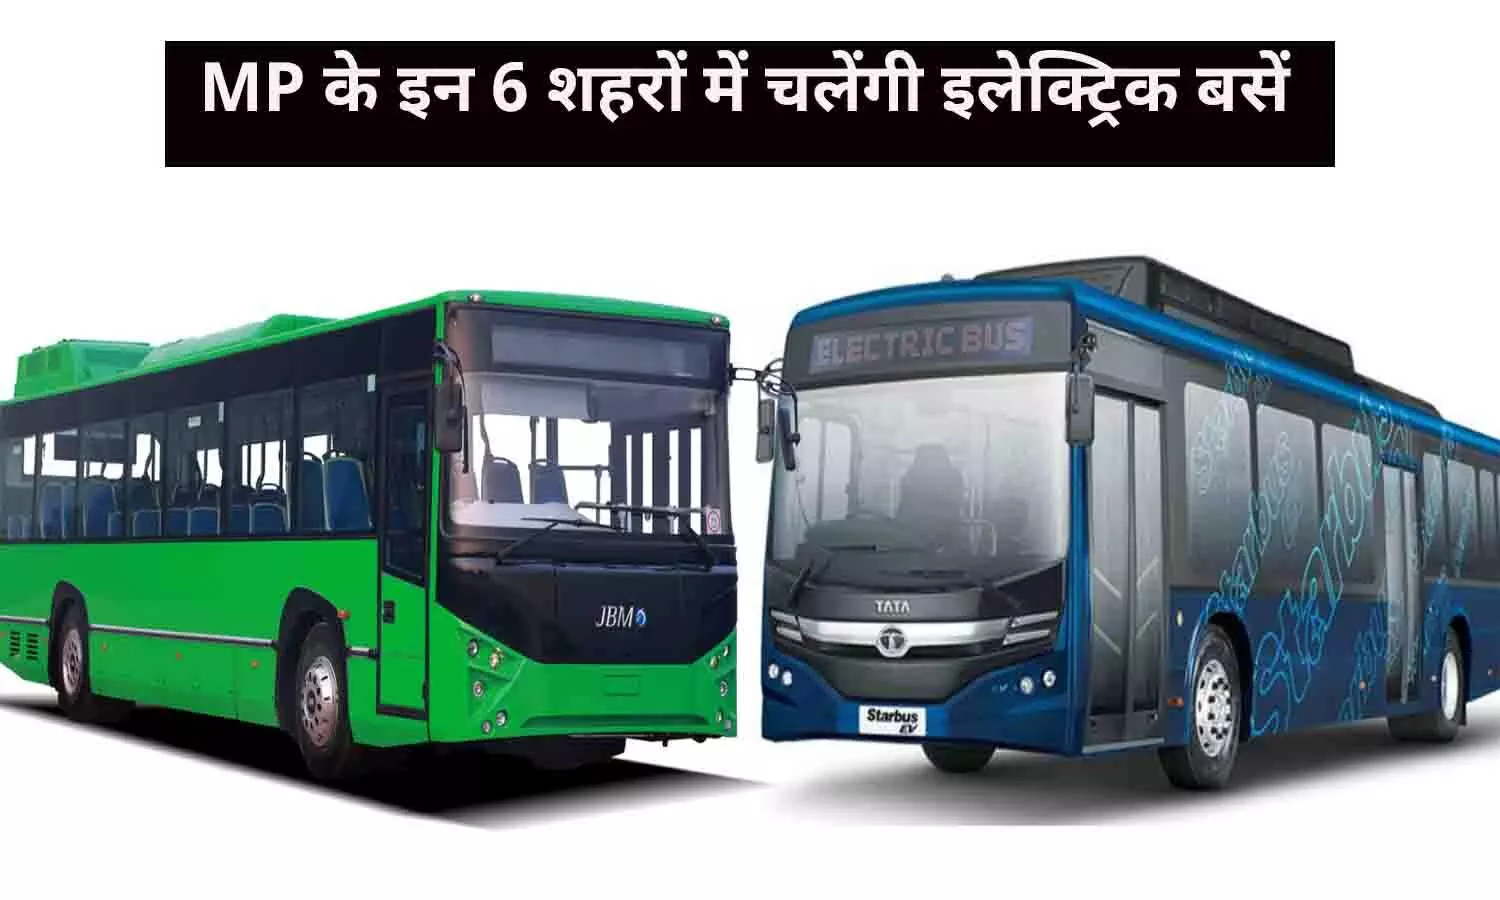 MP के इन 6 शहरों में चलेंगी इलेक्ट्रिक बसें, सीएम मोहन यादव ने दी हरी झंडी